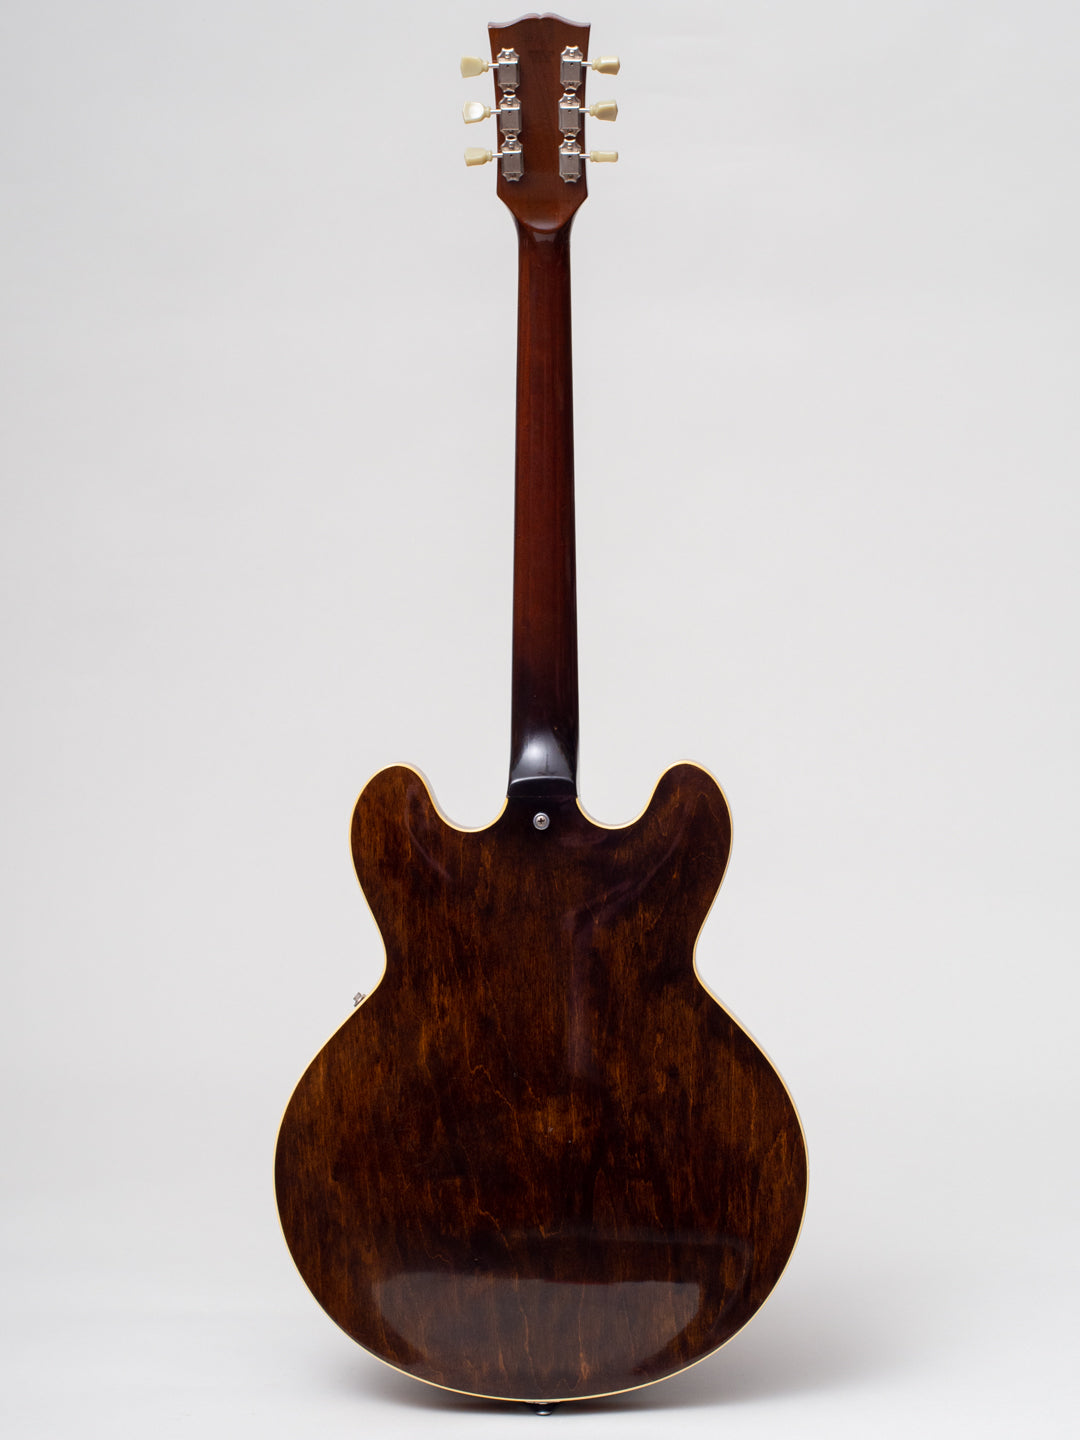 1974 Gibson ES-335 Walnut